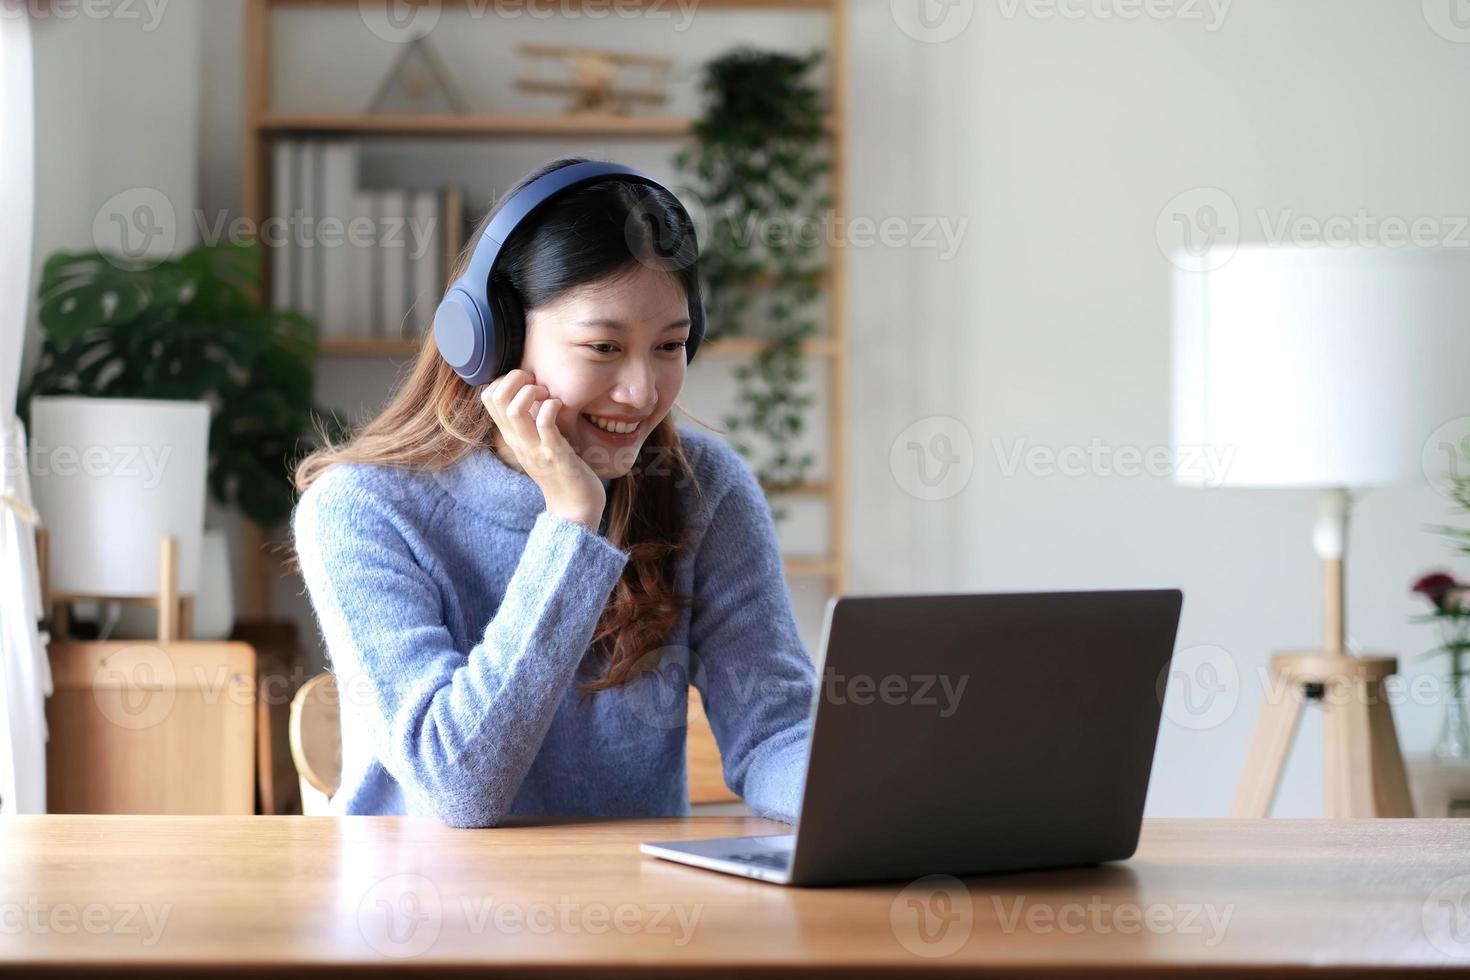 una mujer asiática alegre y hermosa que usa audífonos y busca una tableta digital en una reunión de videollamadas y estudia en línea en Internet. foto